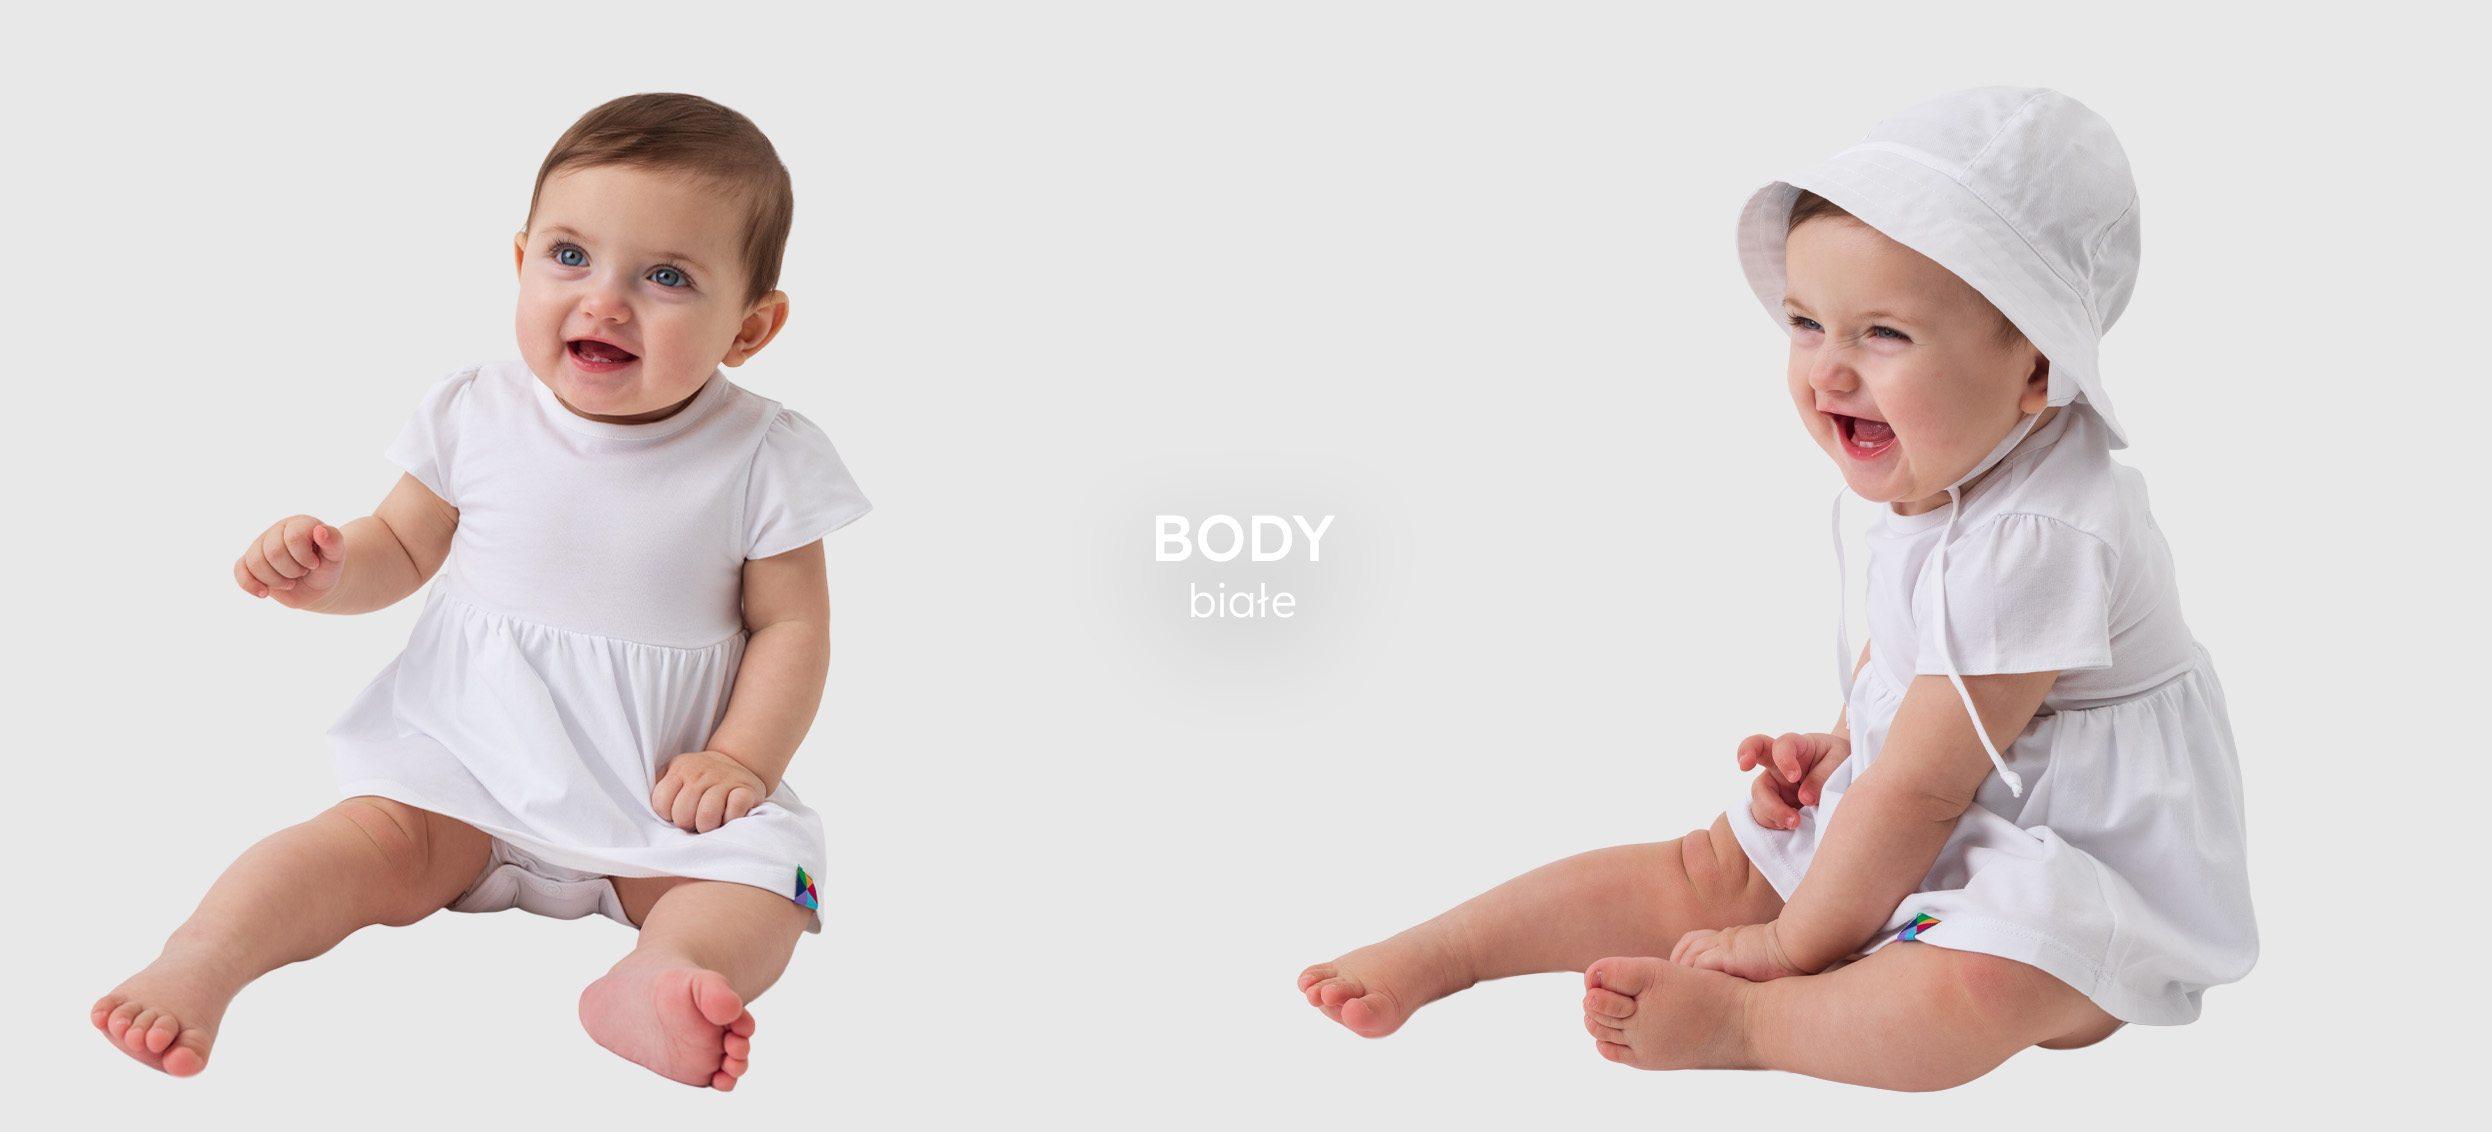 niemowlaki białe body